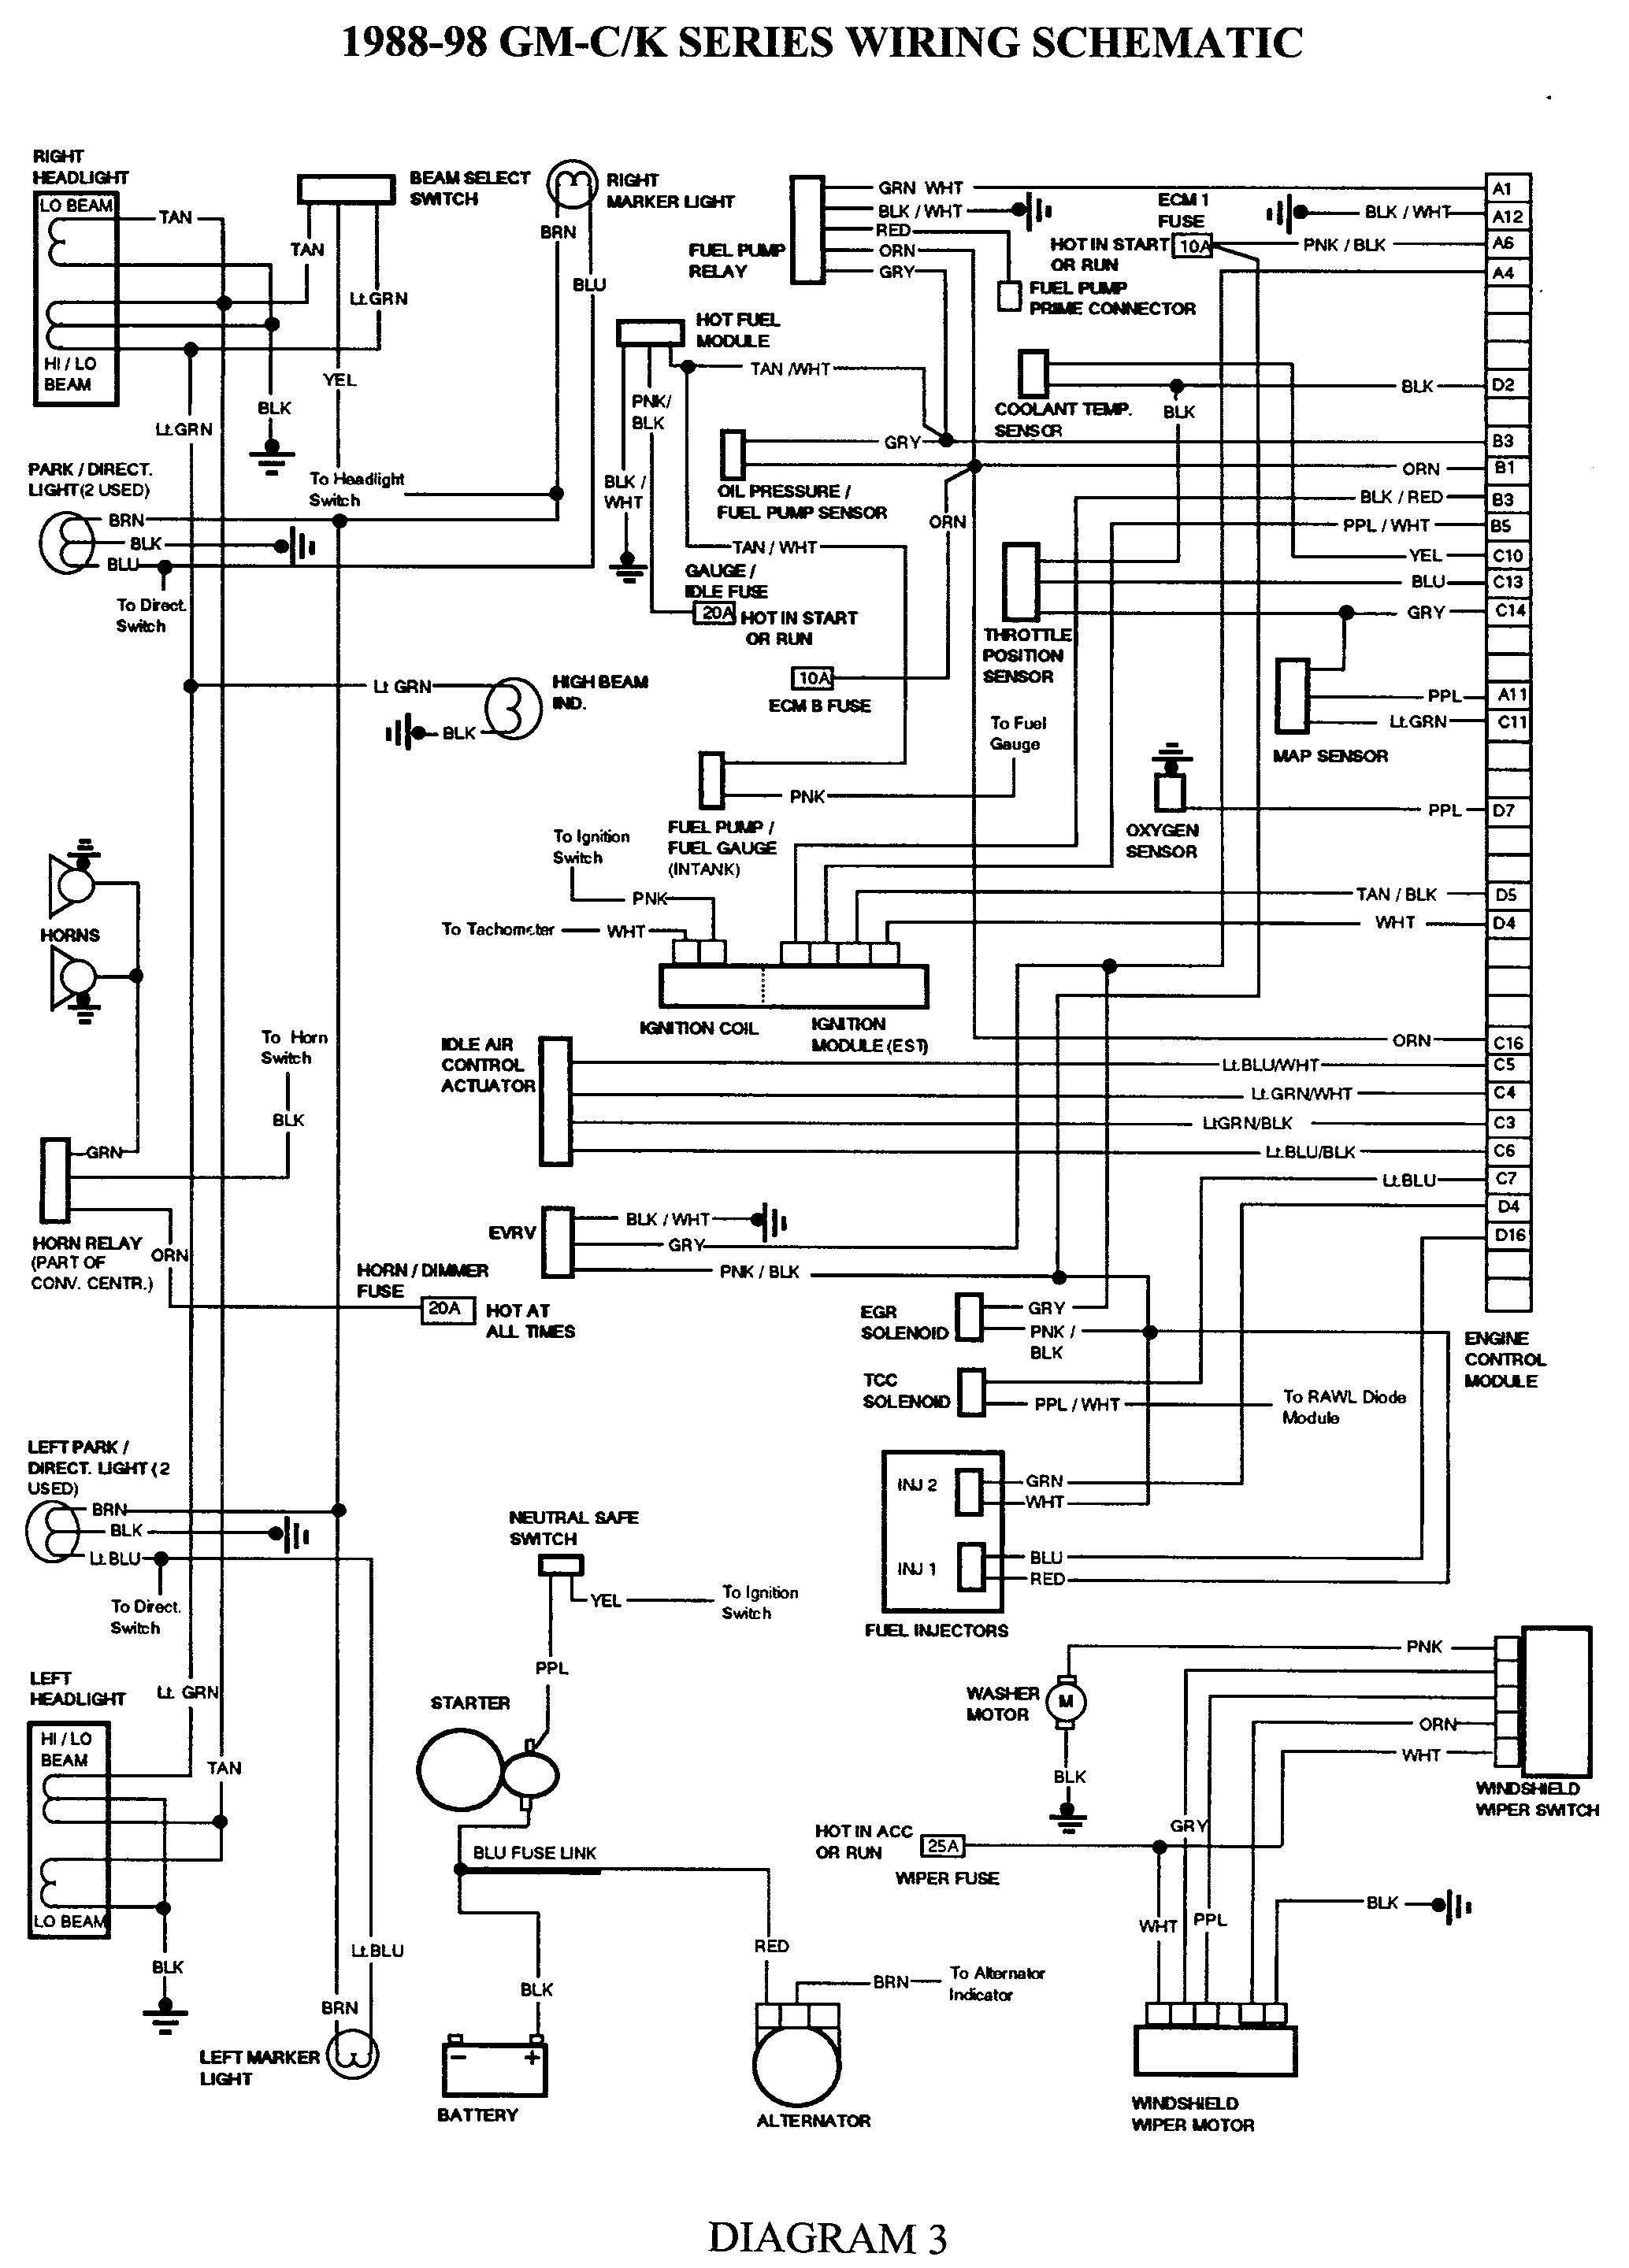 67 Camaro Wiring Diagram 91 Camaro Wiring Diagram Plugs Worksheet and Wiring Diagram • Of 67 Camaro Wiring Diagram